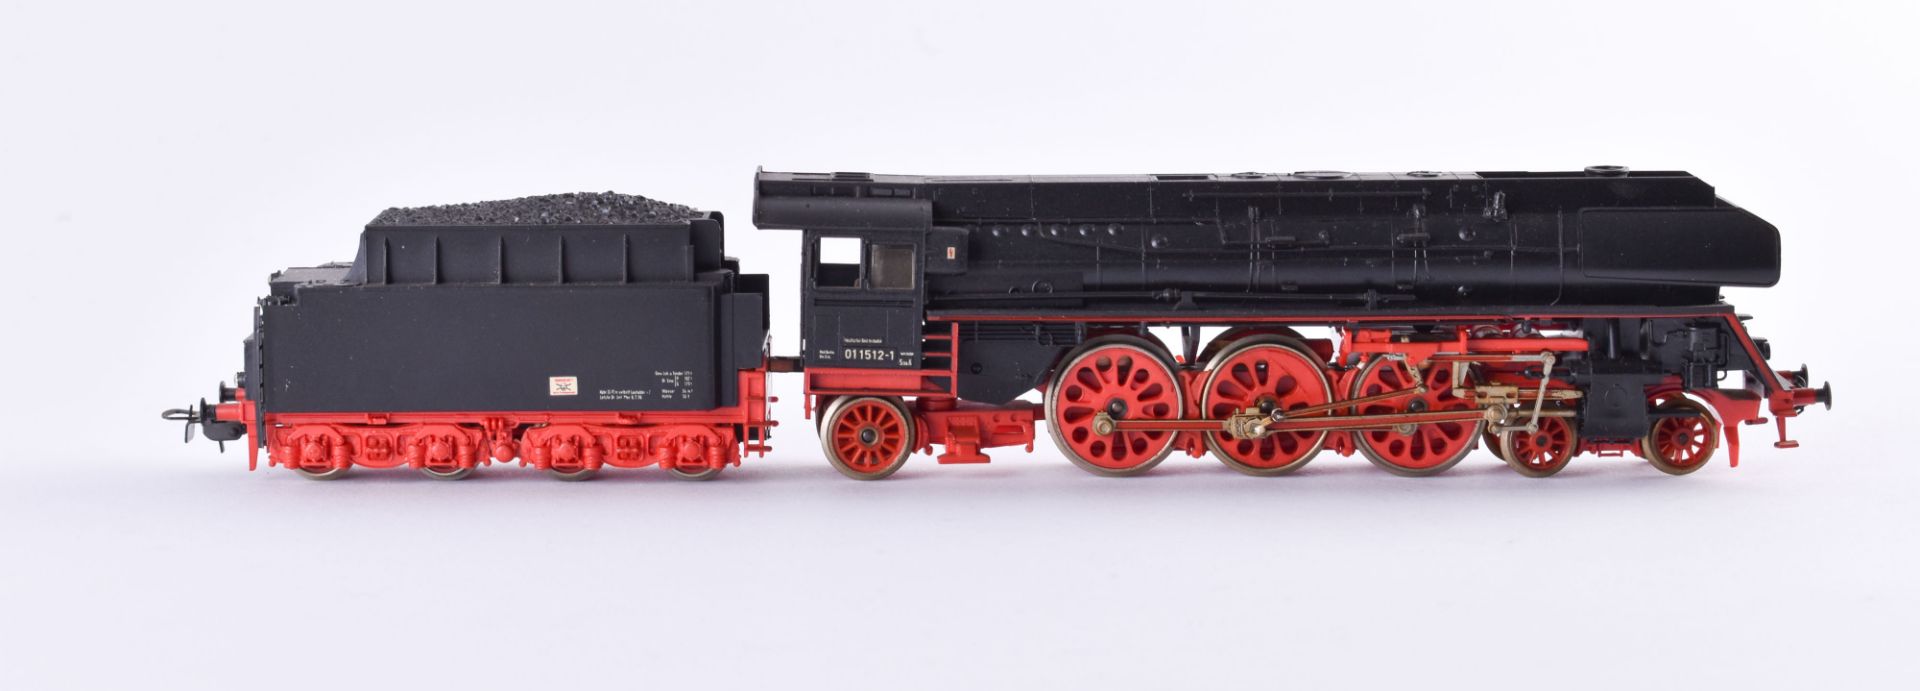 Dampflokomotive BR 011512-1 DR - Piko